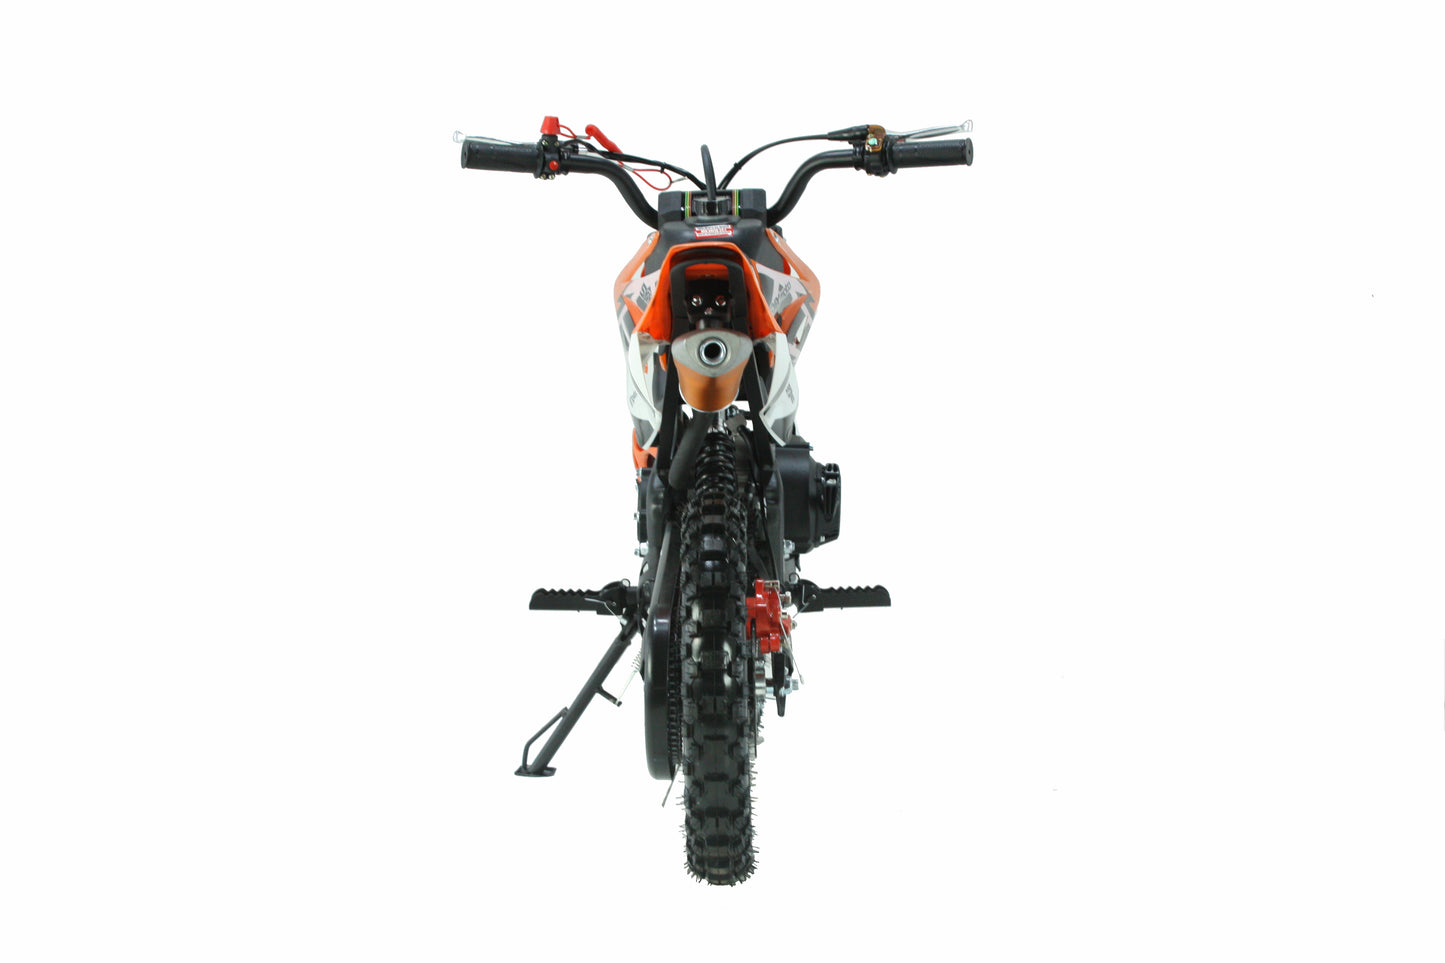 SYX MOTO Holeshot 50cc Pull Start Mini Dirt Bike, Orange - SYX MOTO